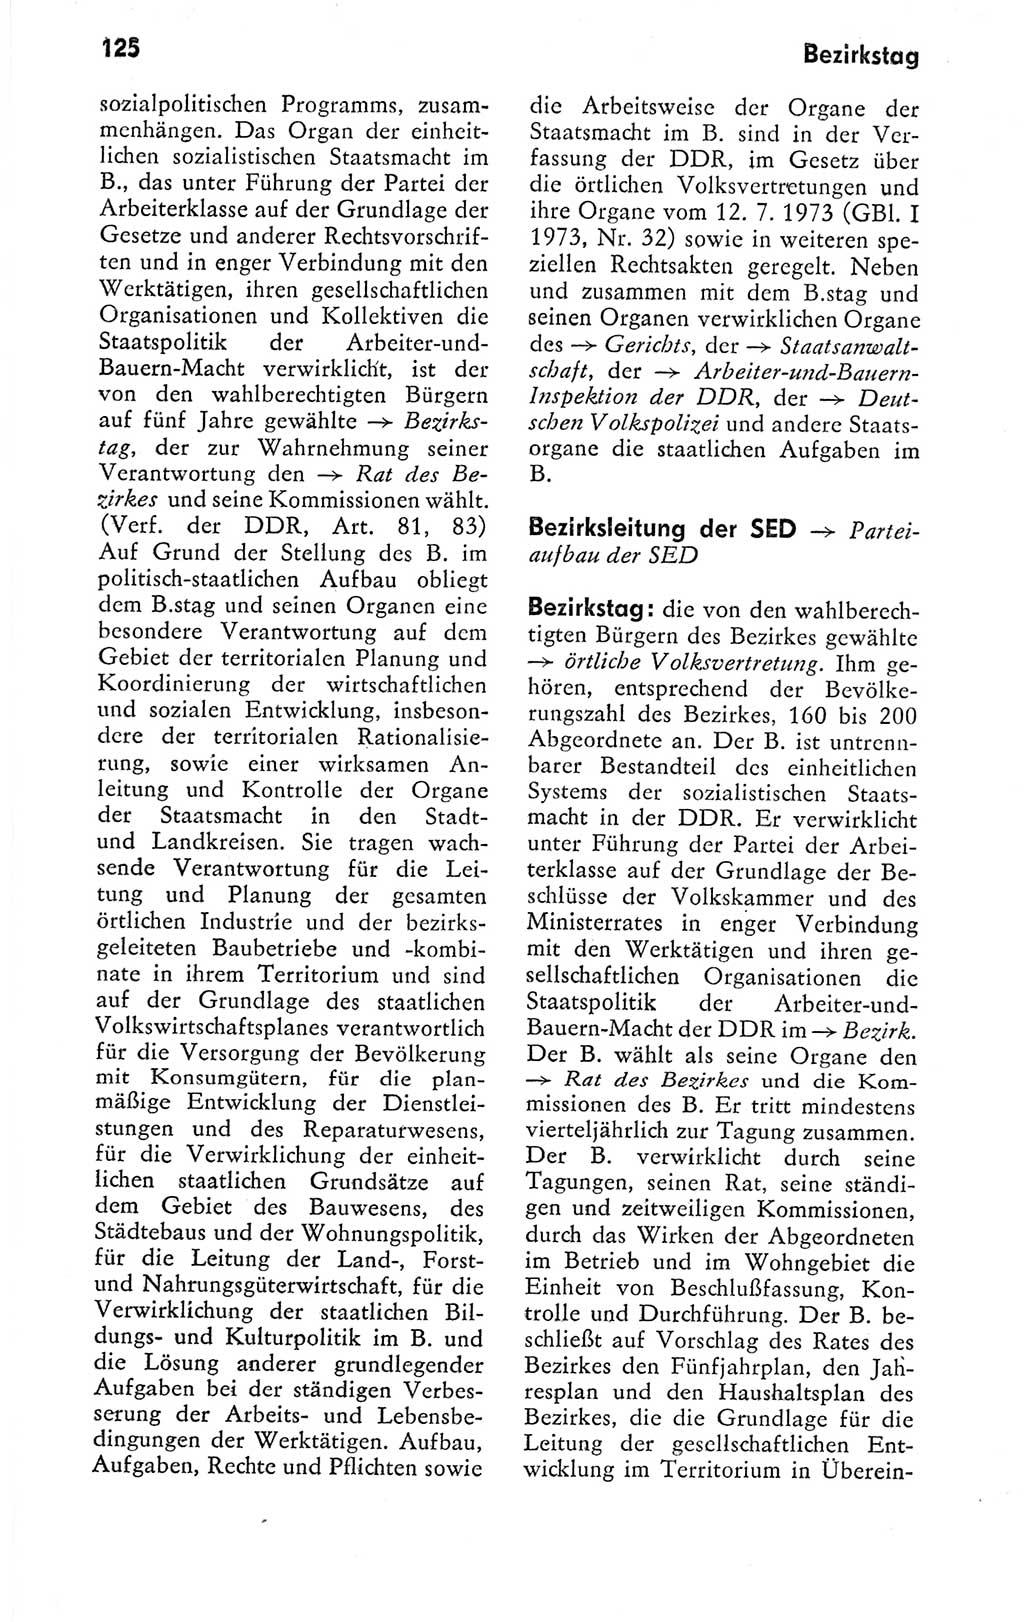 Kleines politisches Wörterbuch [Deutsche Demokratische Republik (DDR)] 1978, Seite 125 (Kl. pol. Wb. DDR 1978, S. 125)